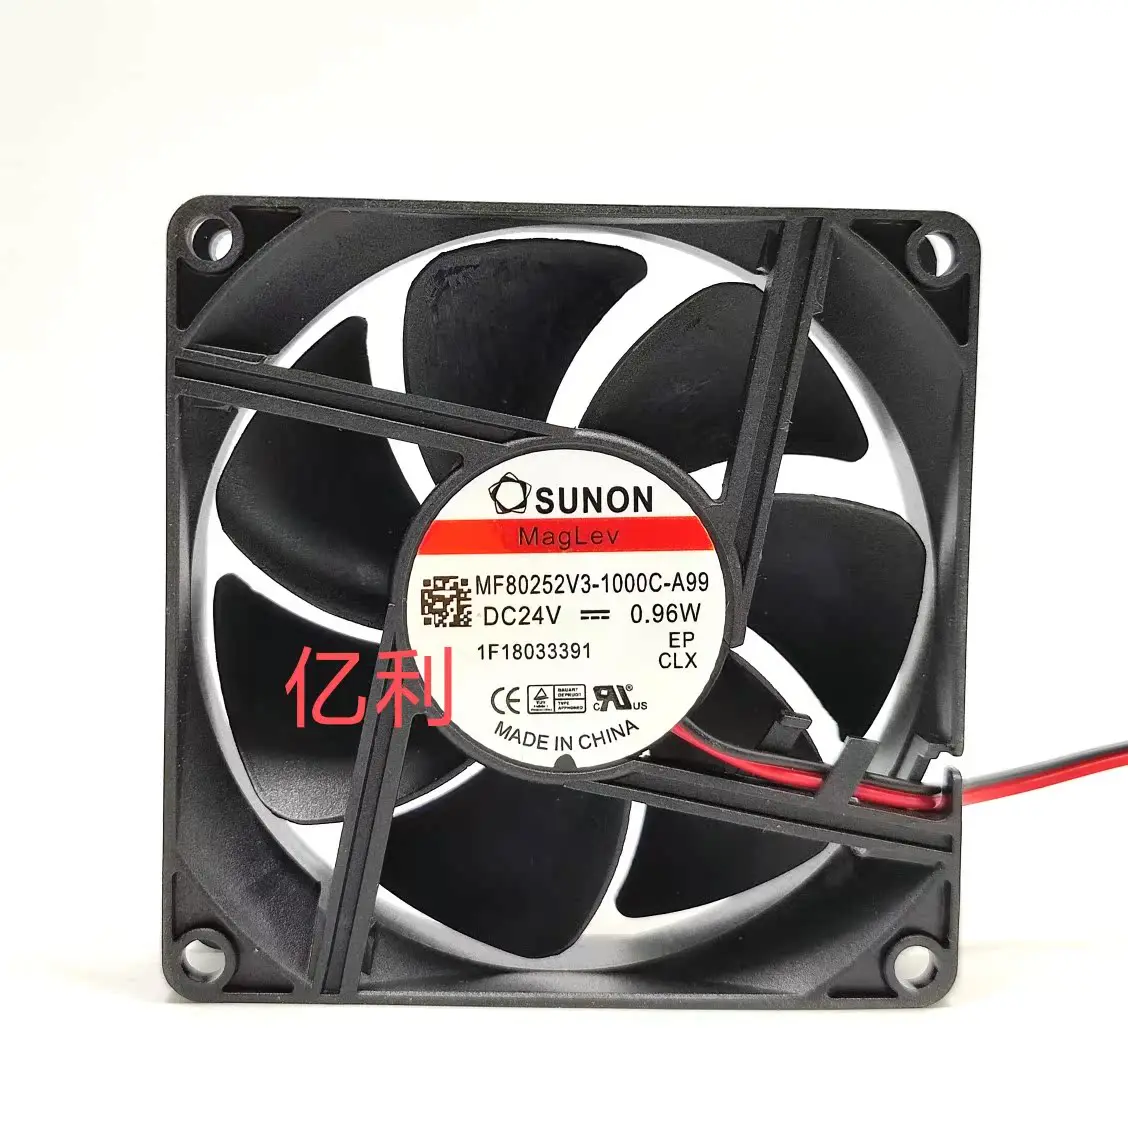 

SUNON MF80252V3-1000C-A99 DC 24V 0.96W 80x80x25mm 2-Wire Server Cooling Fan